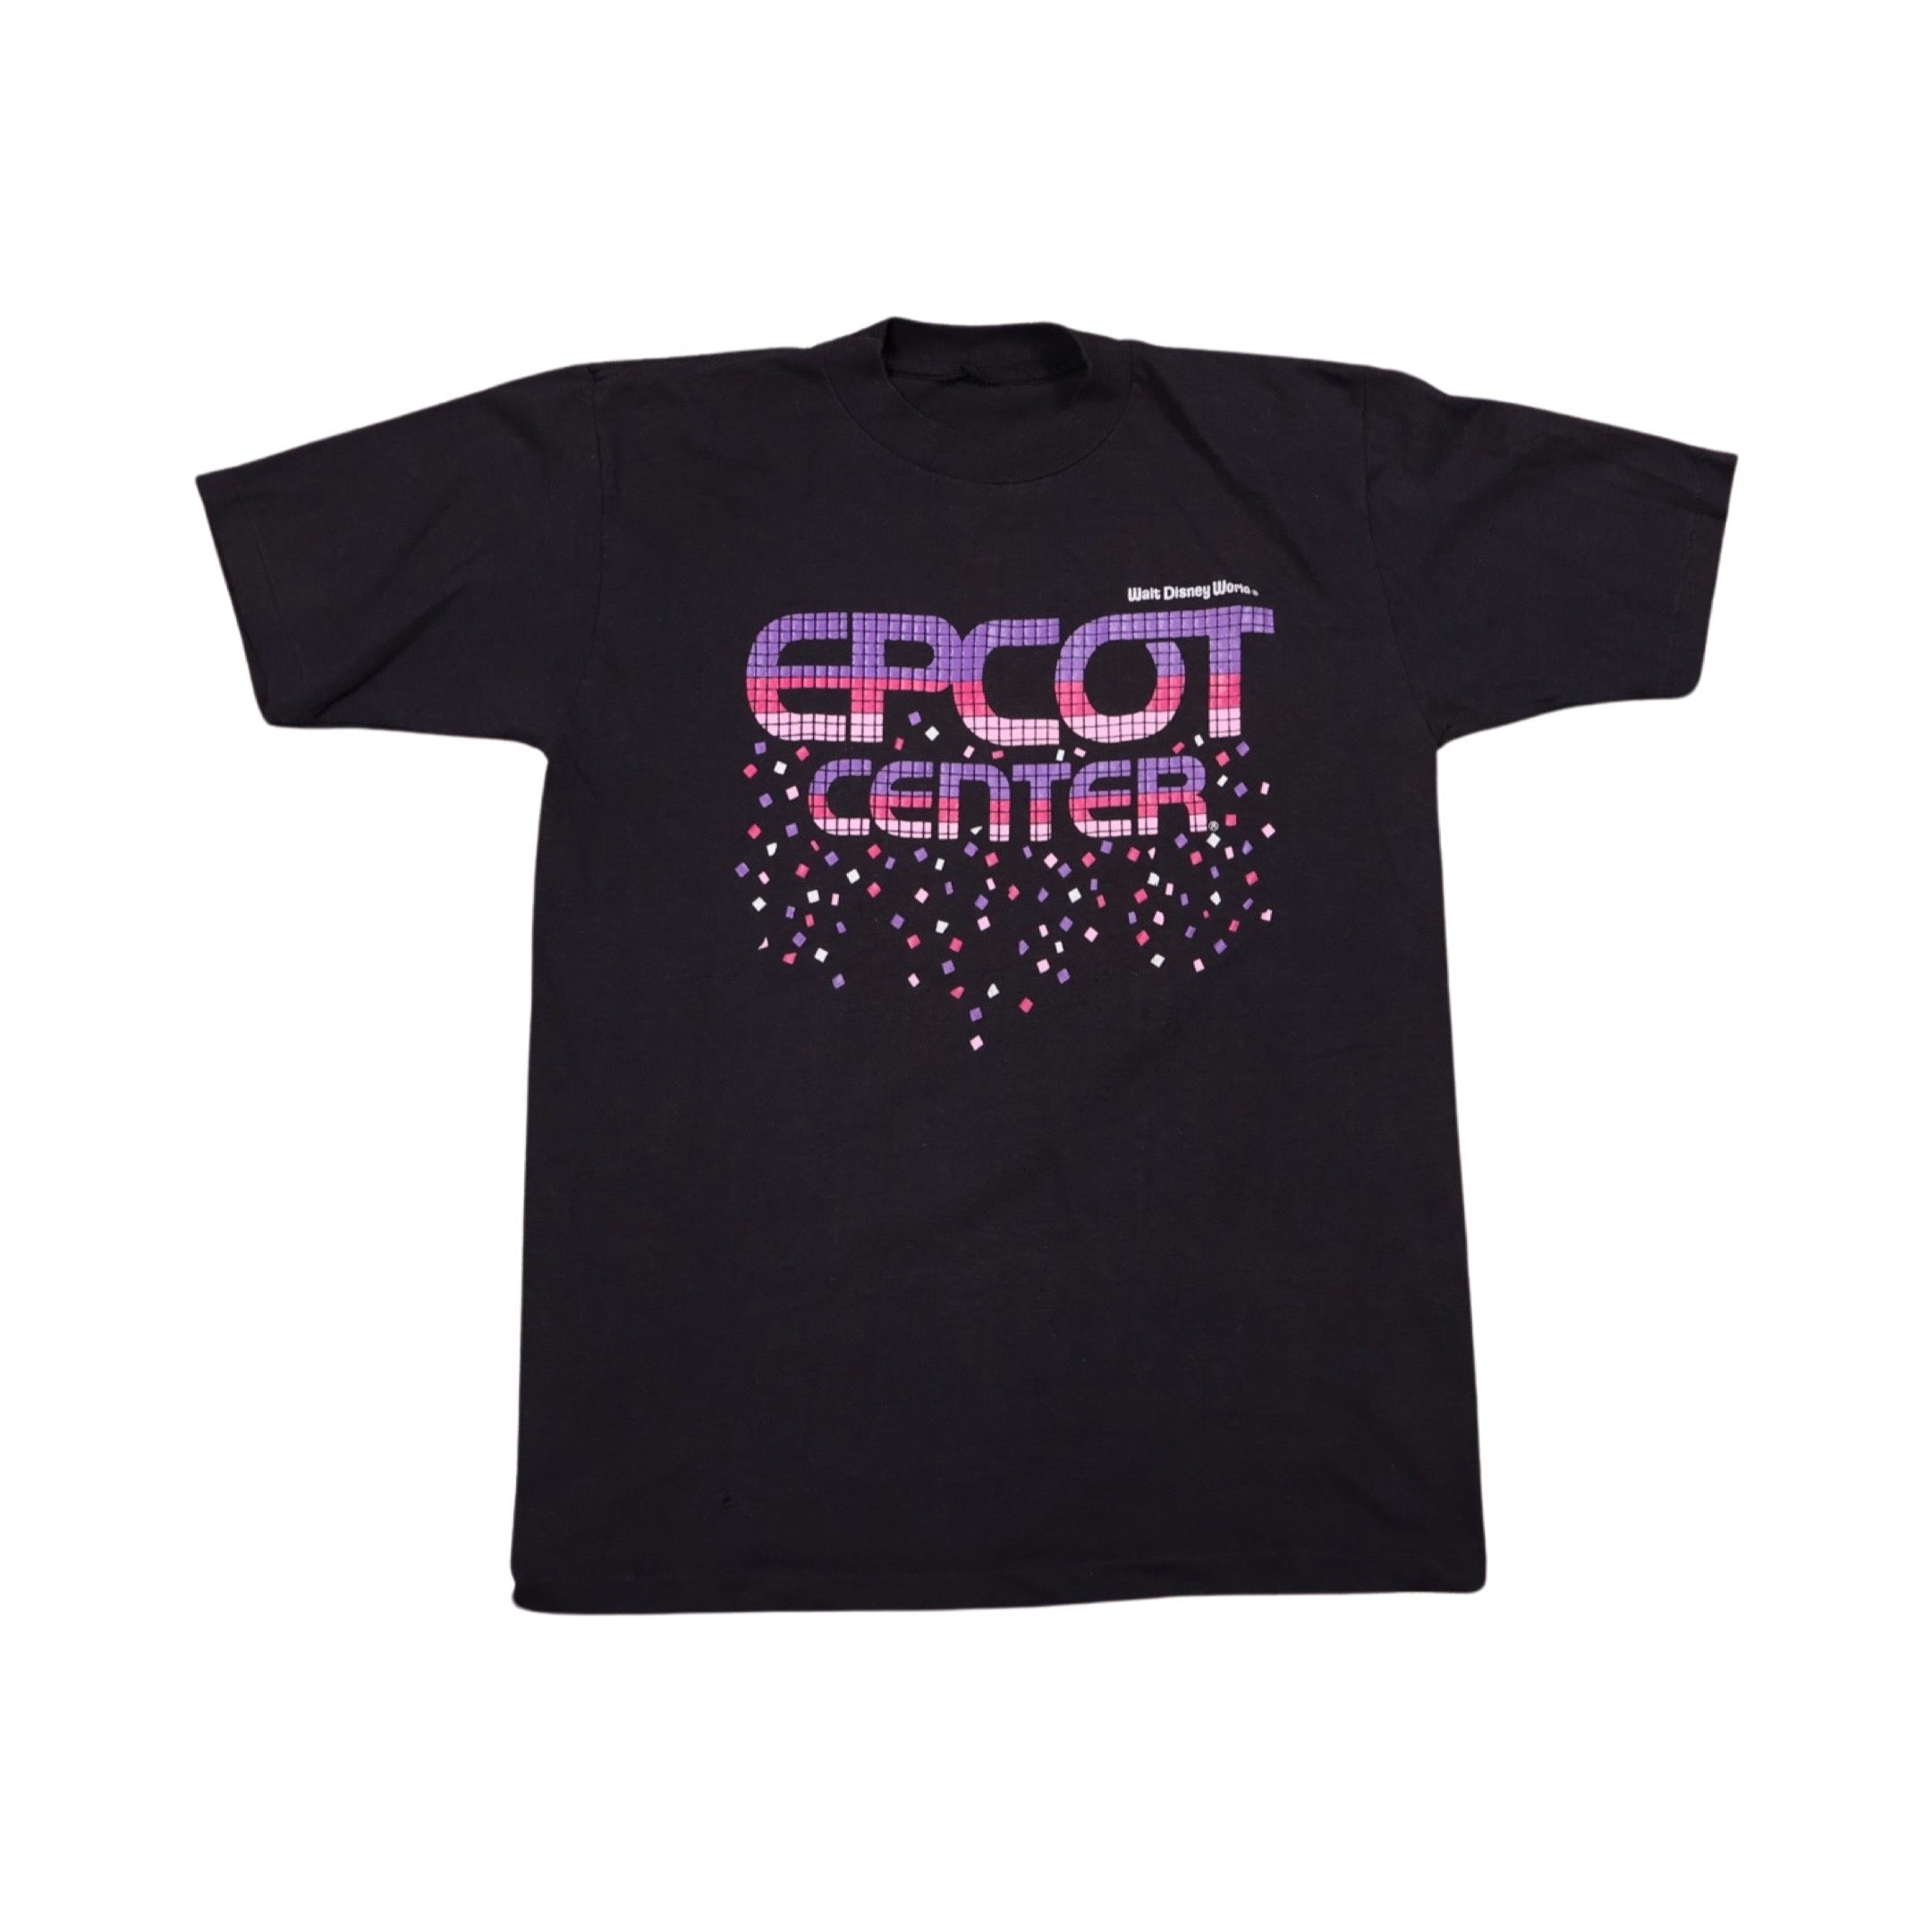 Epcot Center 80s T-Shirt (Medium)